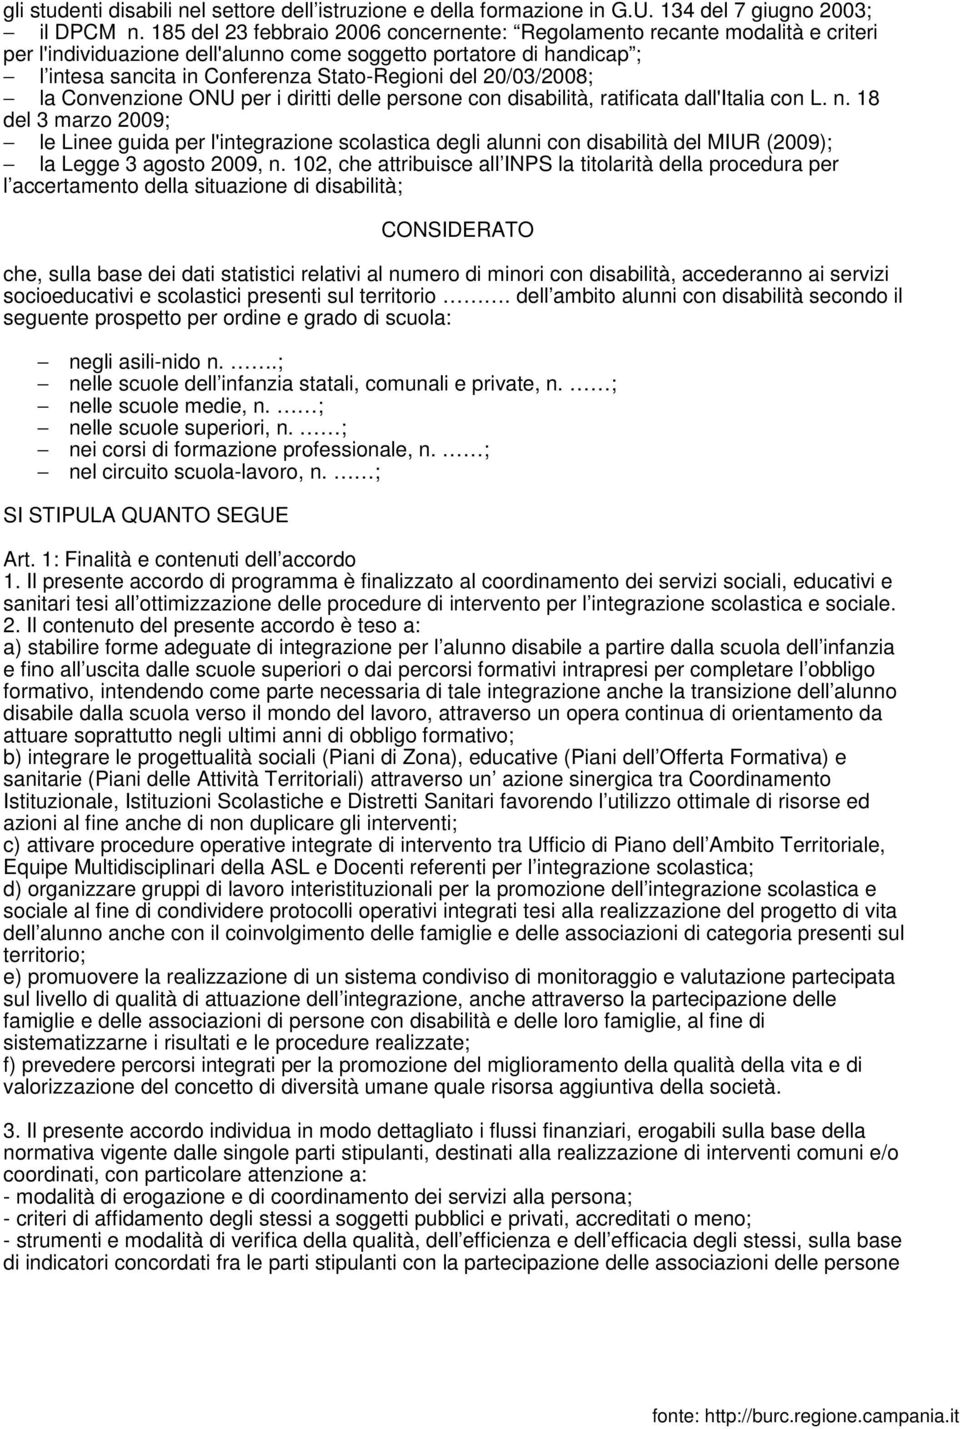 20/03/2008; la Convenzione ONU per i diritti delle persone con disabilità, ratificata dall'italia con L. n.